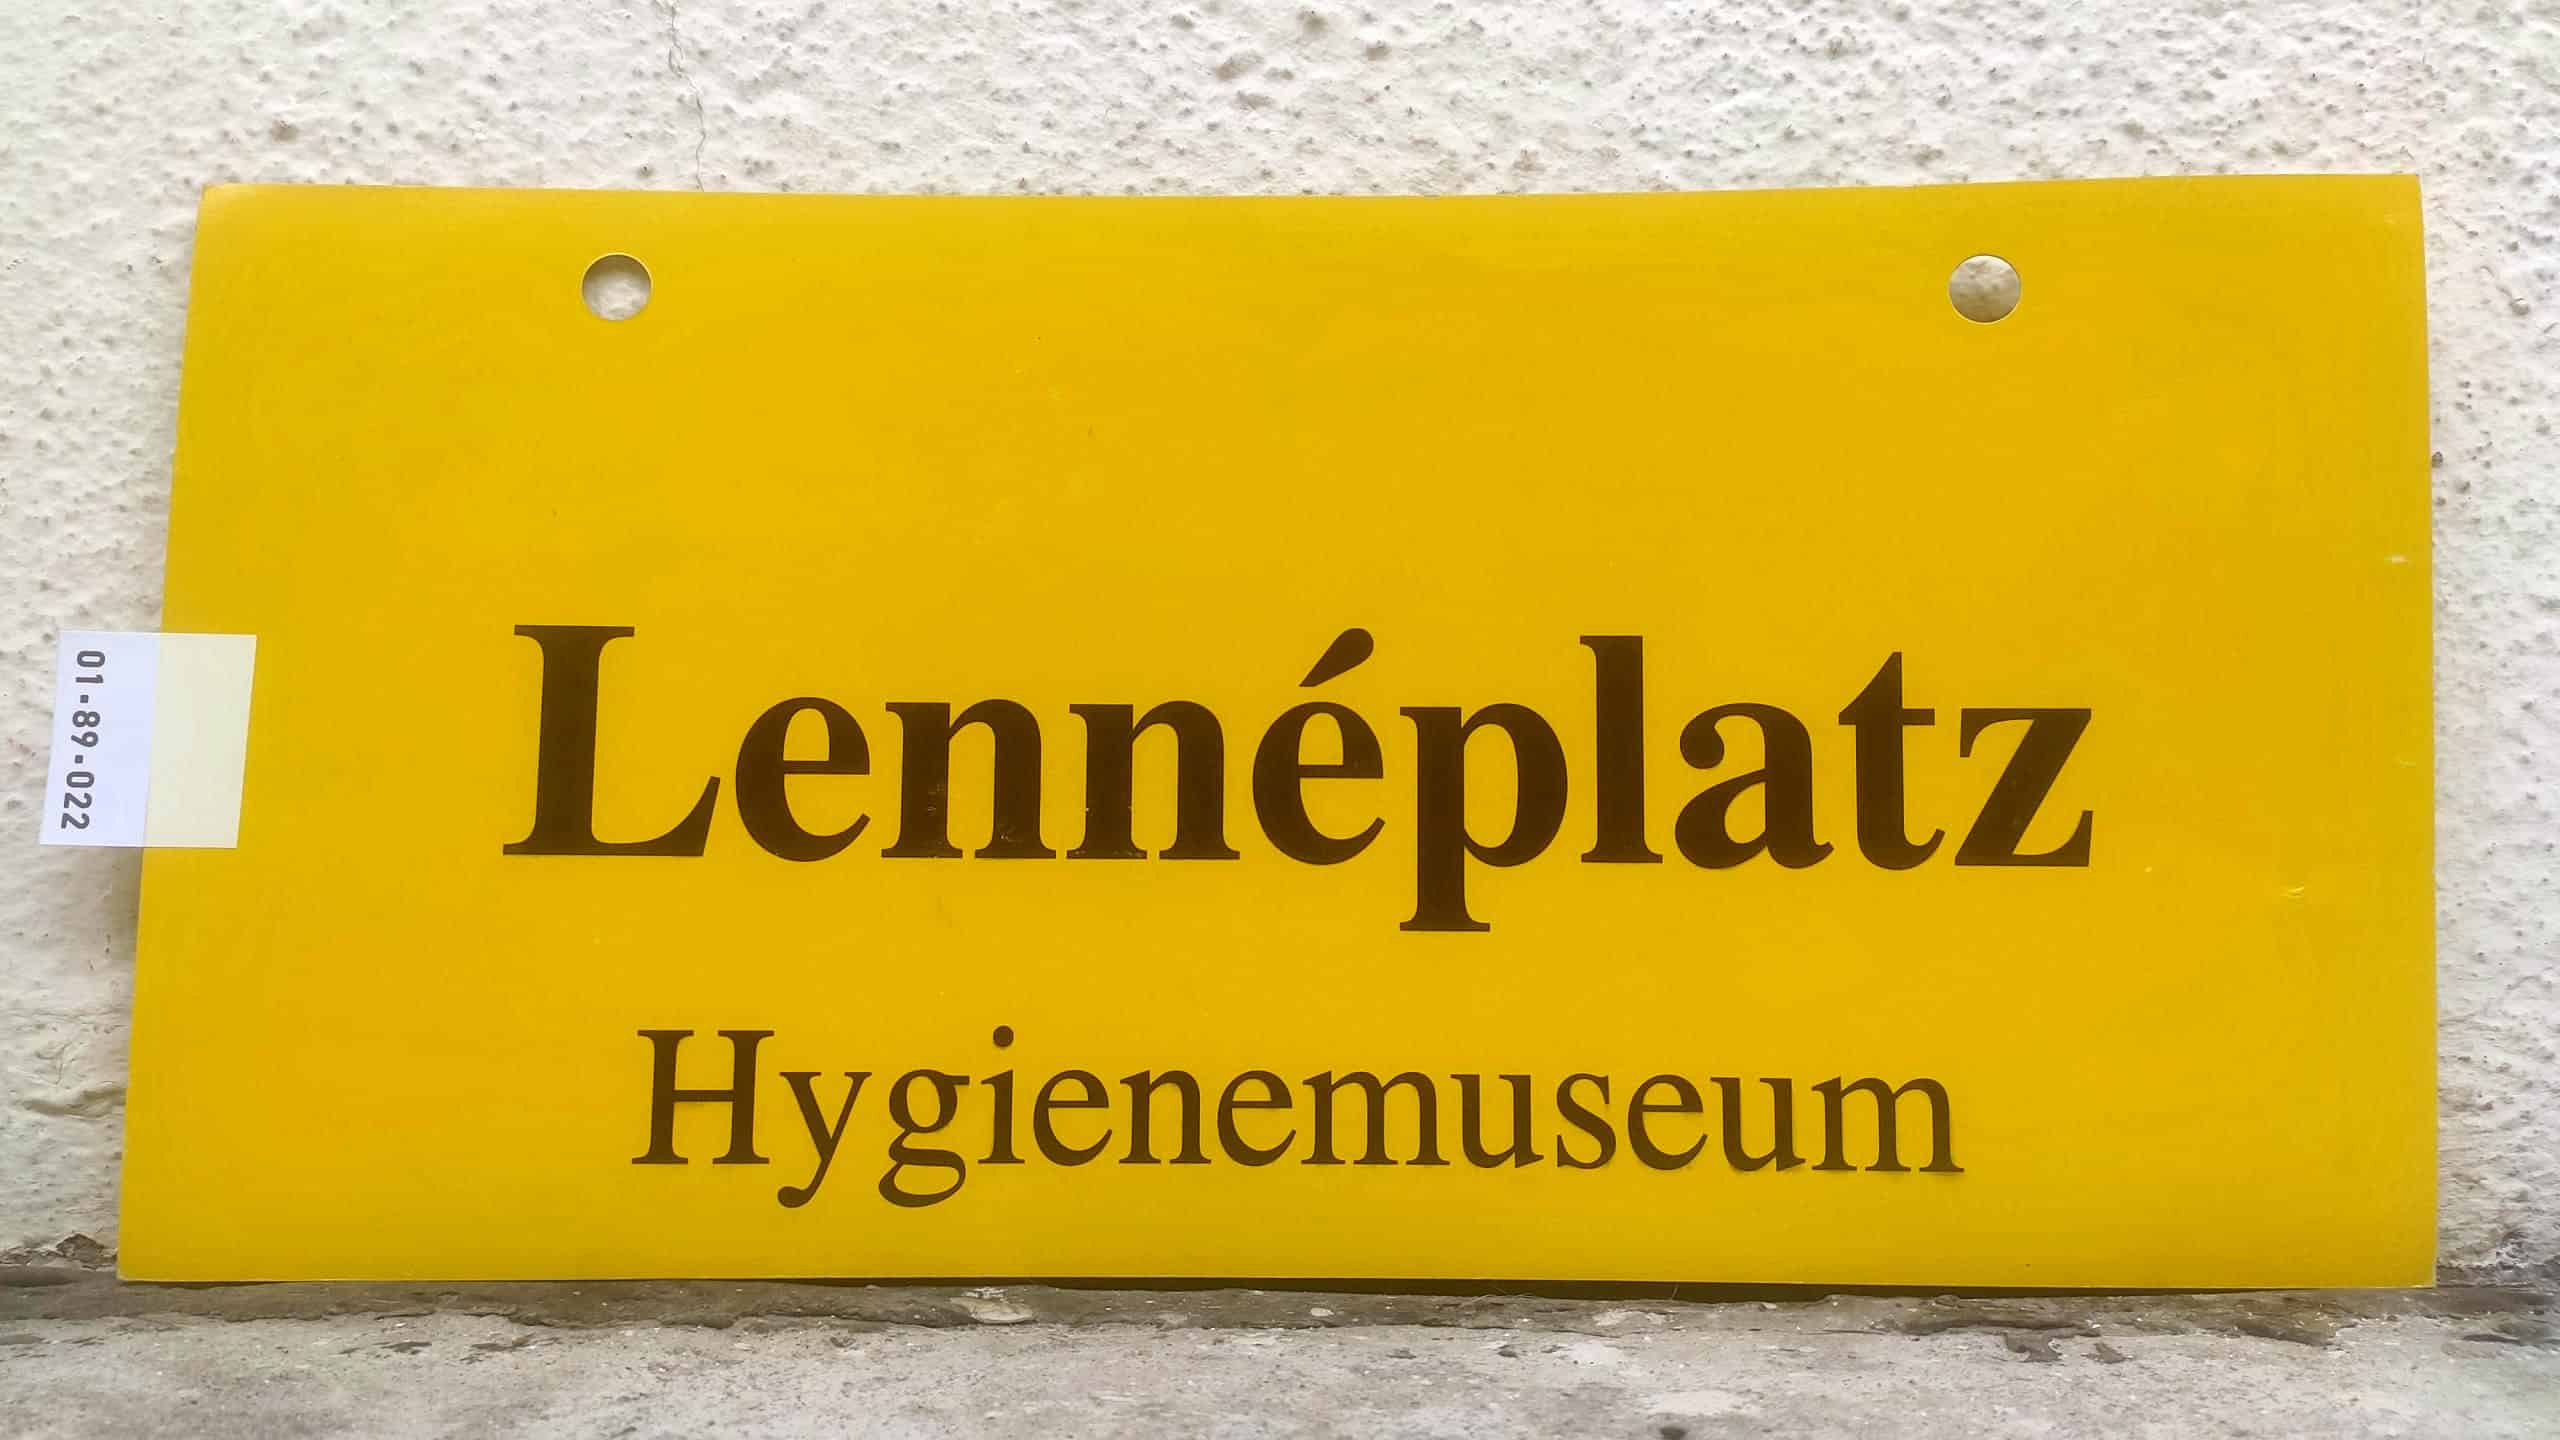 Lennéplatz Hygienemuseum